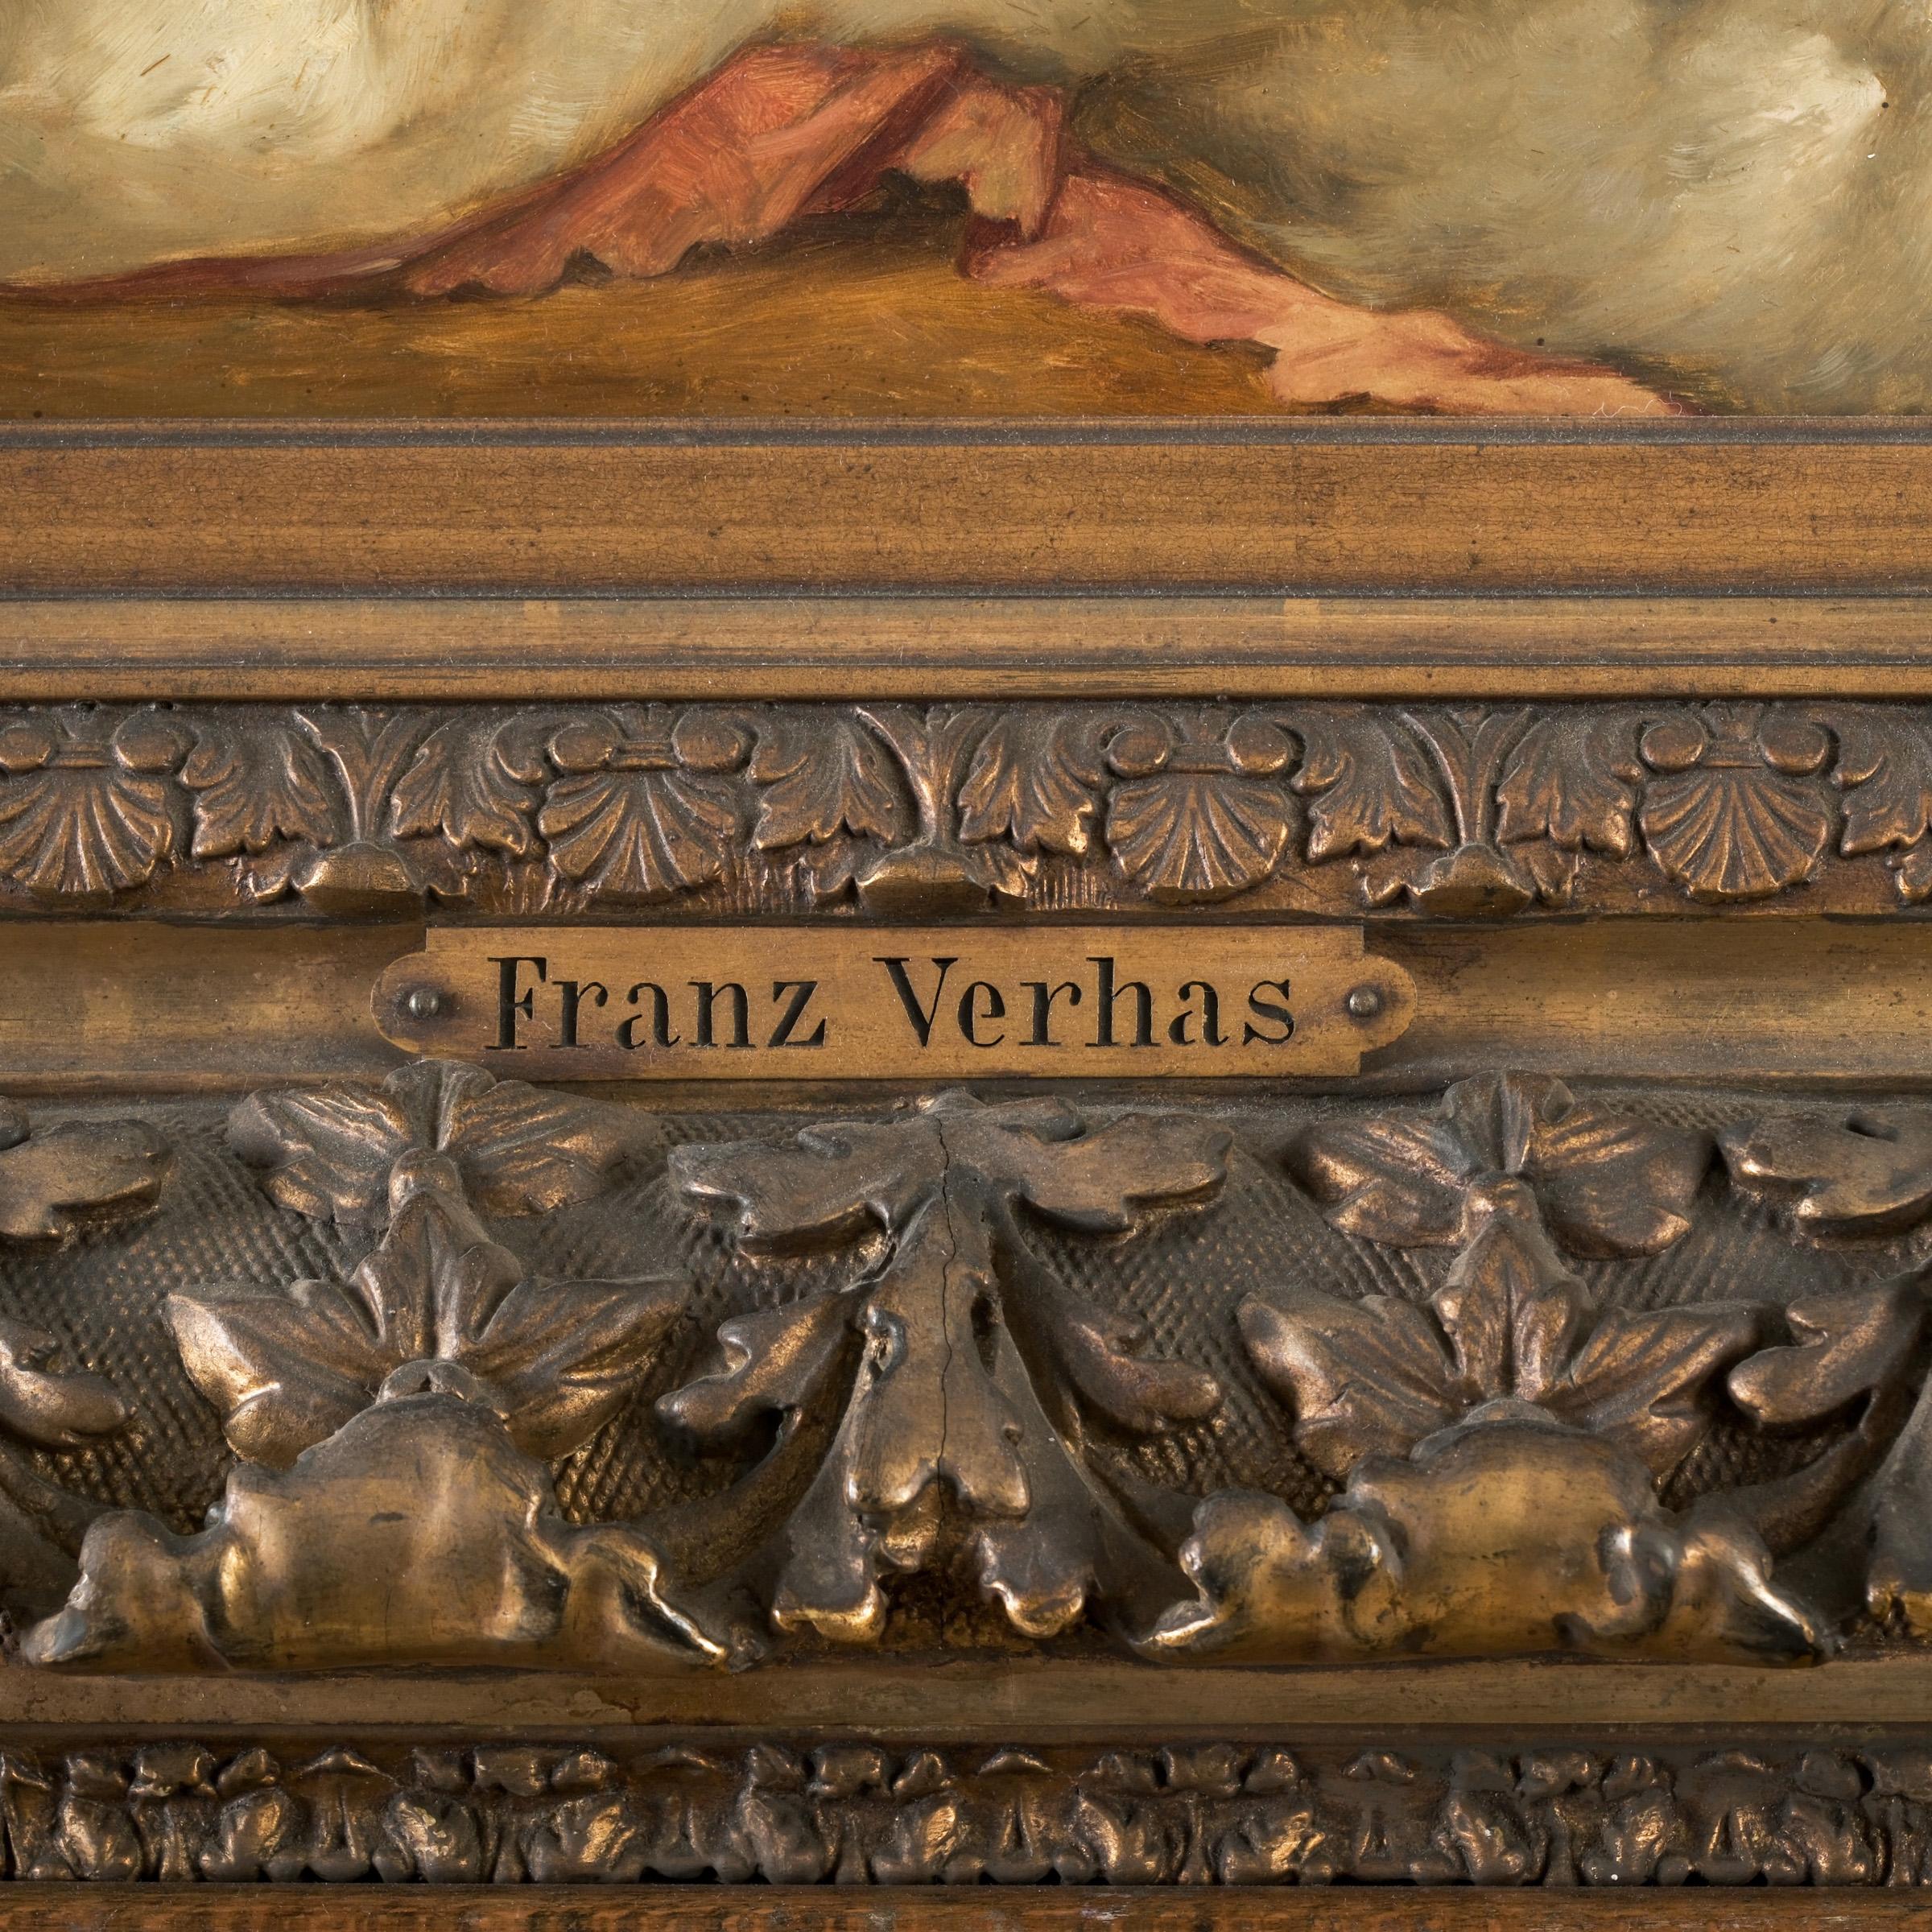 Frans Verhas 'Devant le miroir`
Frans Verhas

(1827 Dendermonde - 1897 Schaerbeck)

